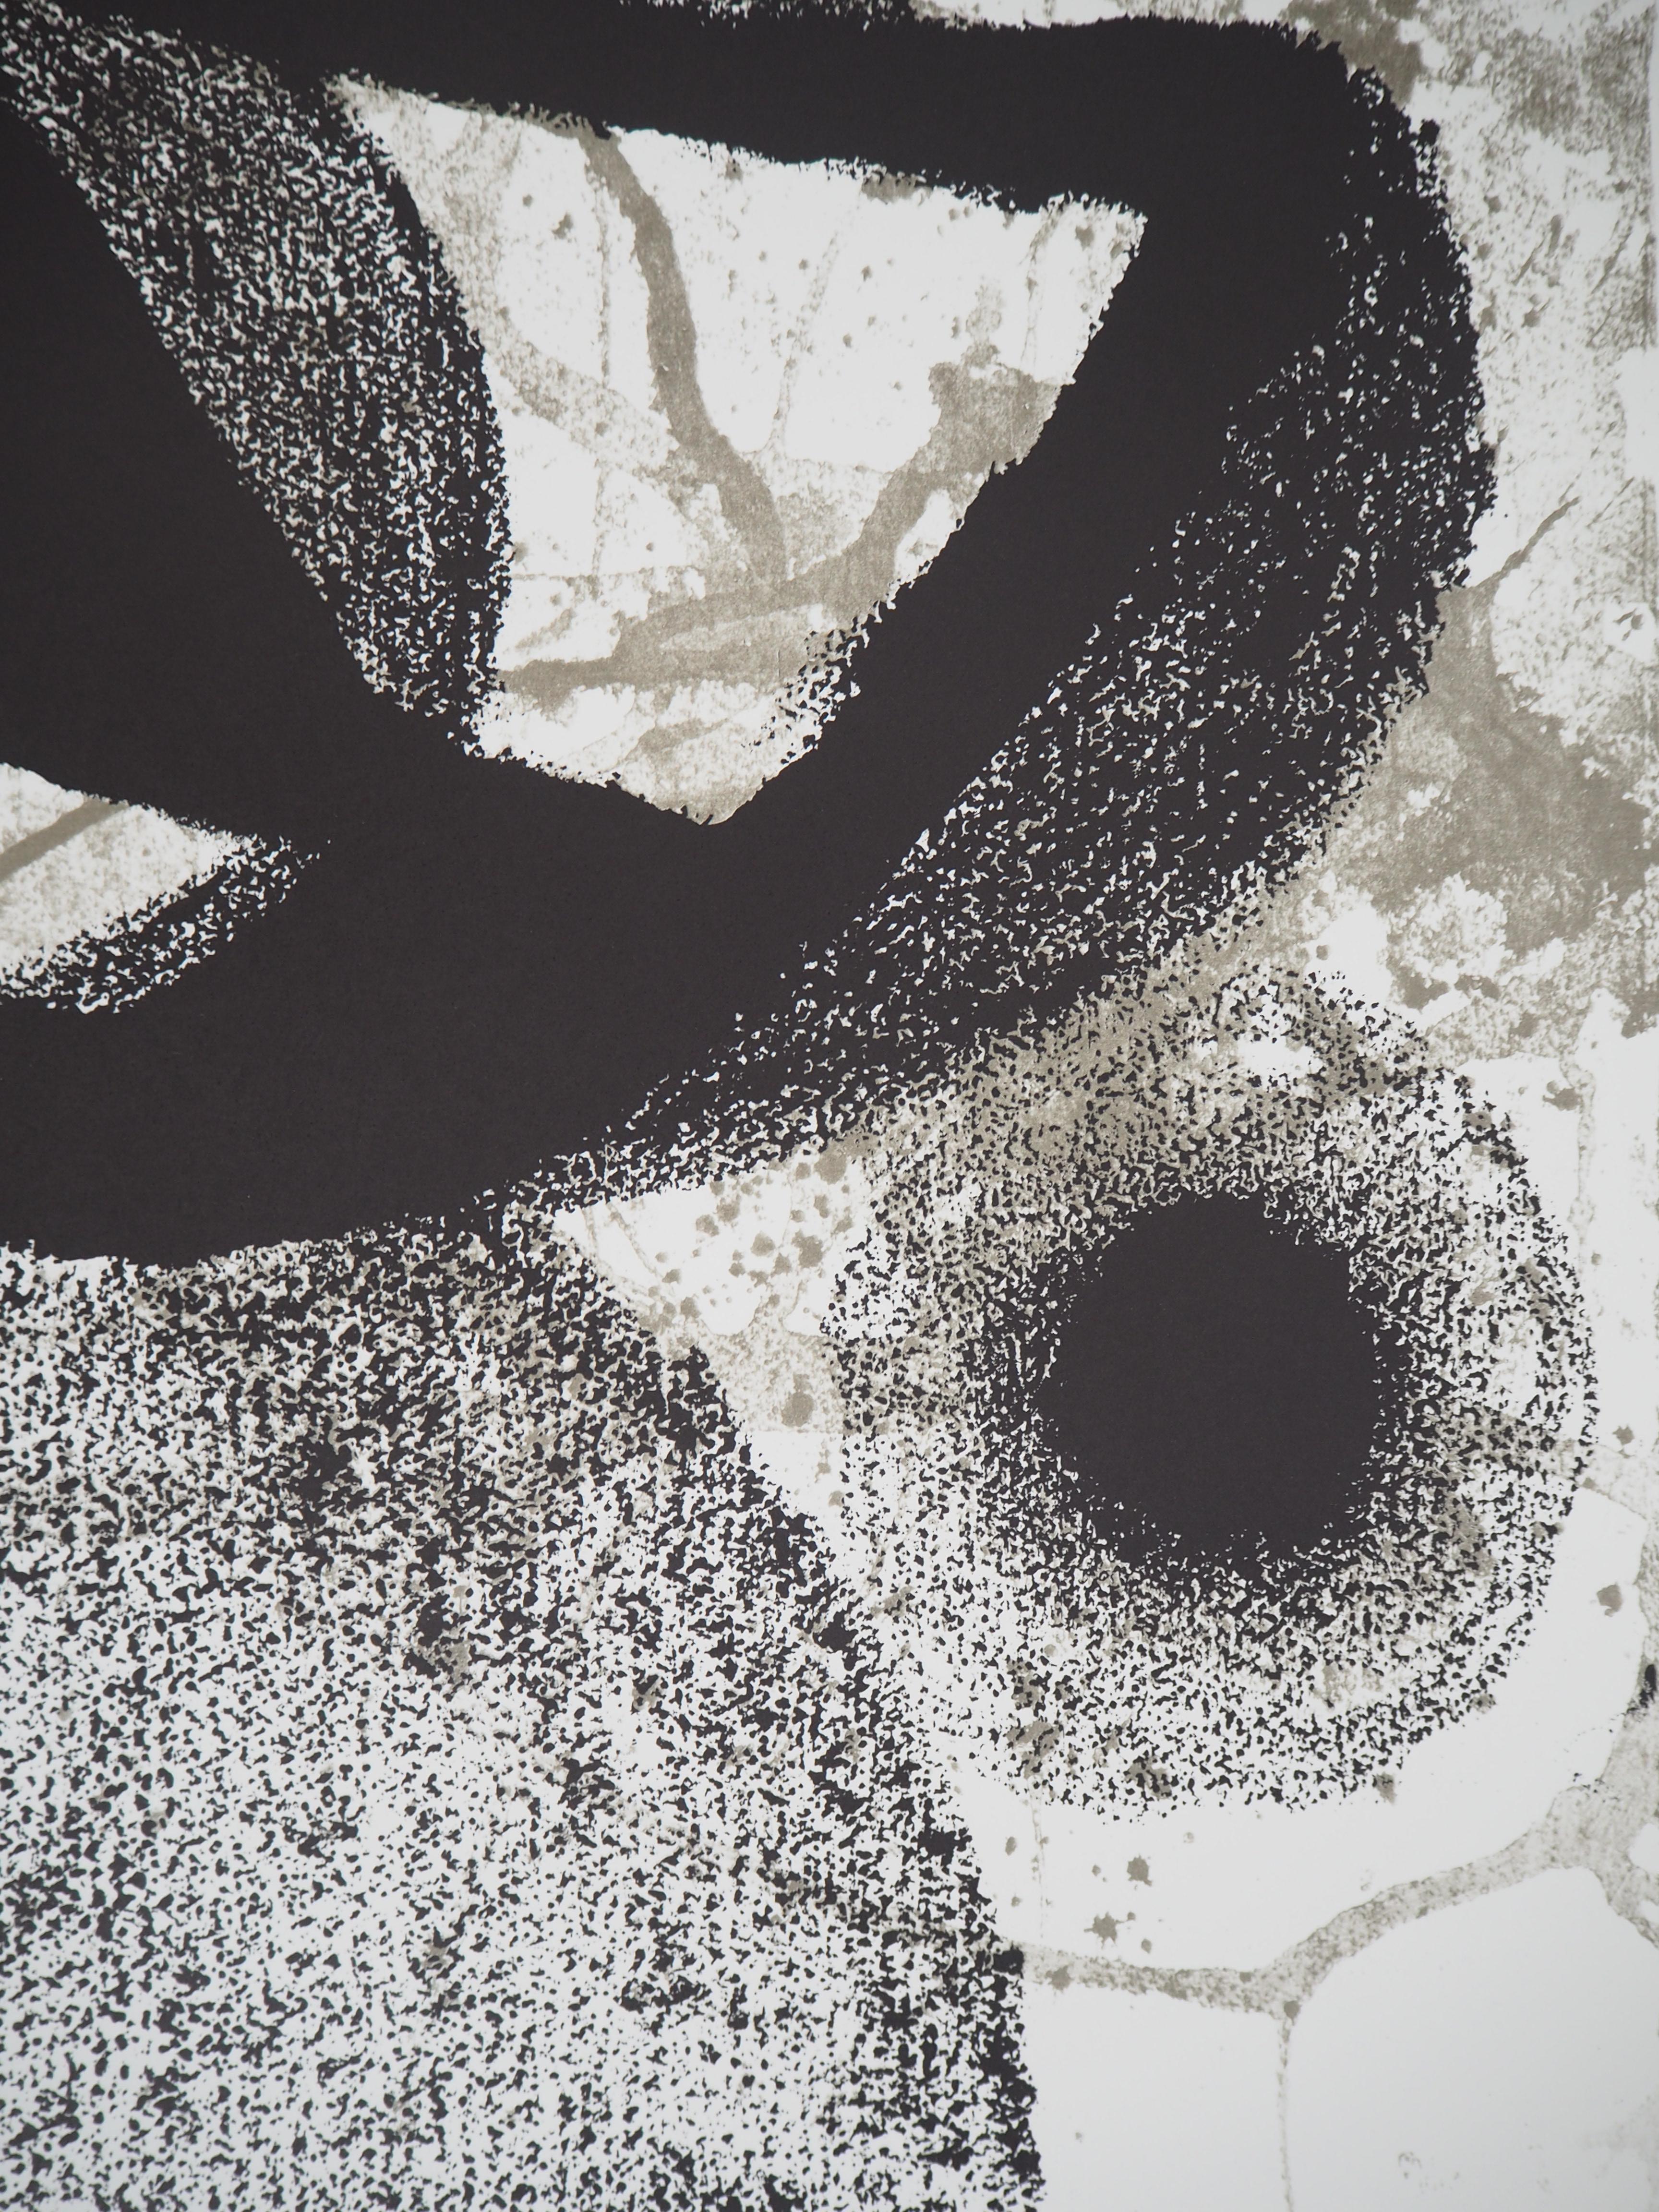 Joan MIRO (nach)
Surrealistischer Vogel

Lithographie (Gedruckt in den Arte-Werkstätten in Paris)
Auf schwerem Papier 76,5 x 55 cm (ca. 29,9 x 21,6 Zoll)
Herausgegeben von galerie Maeght um 1990

Ausgezeichneter Zustand